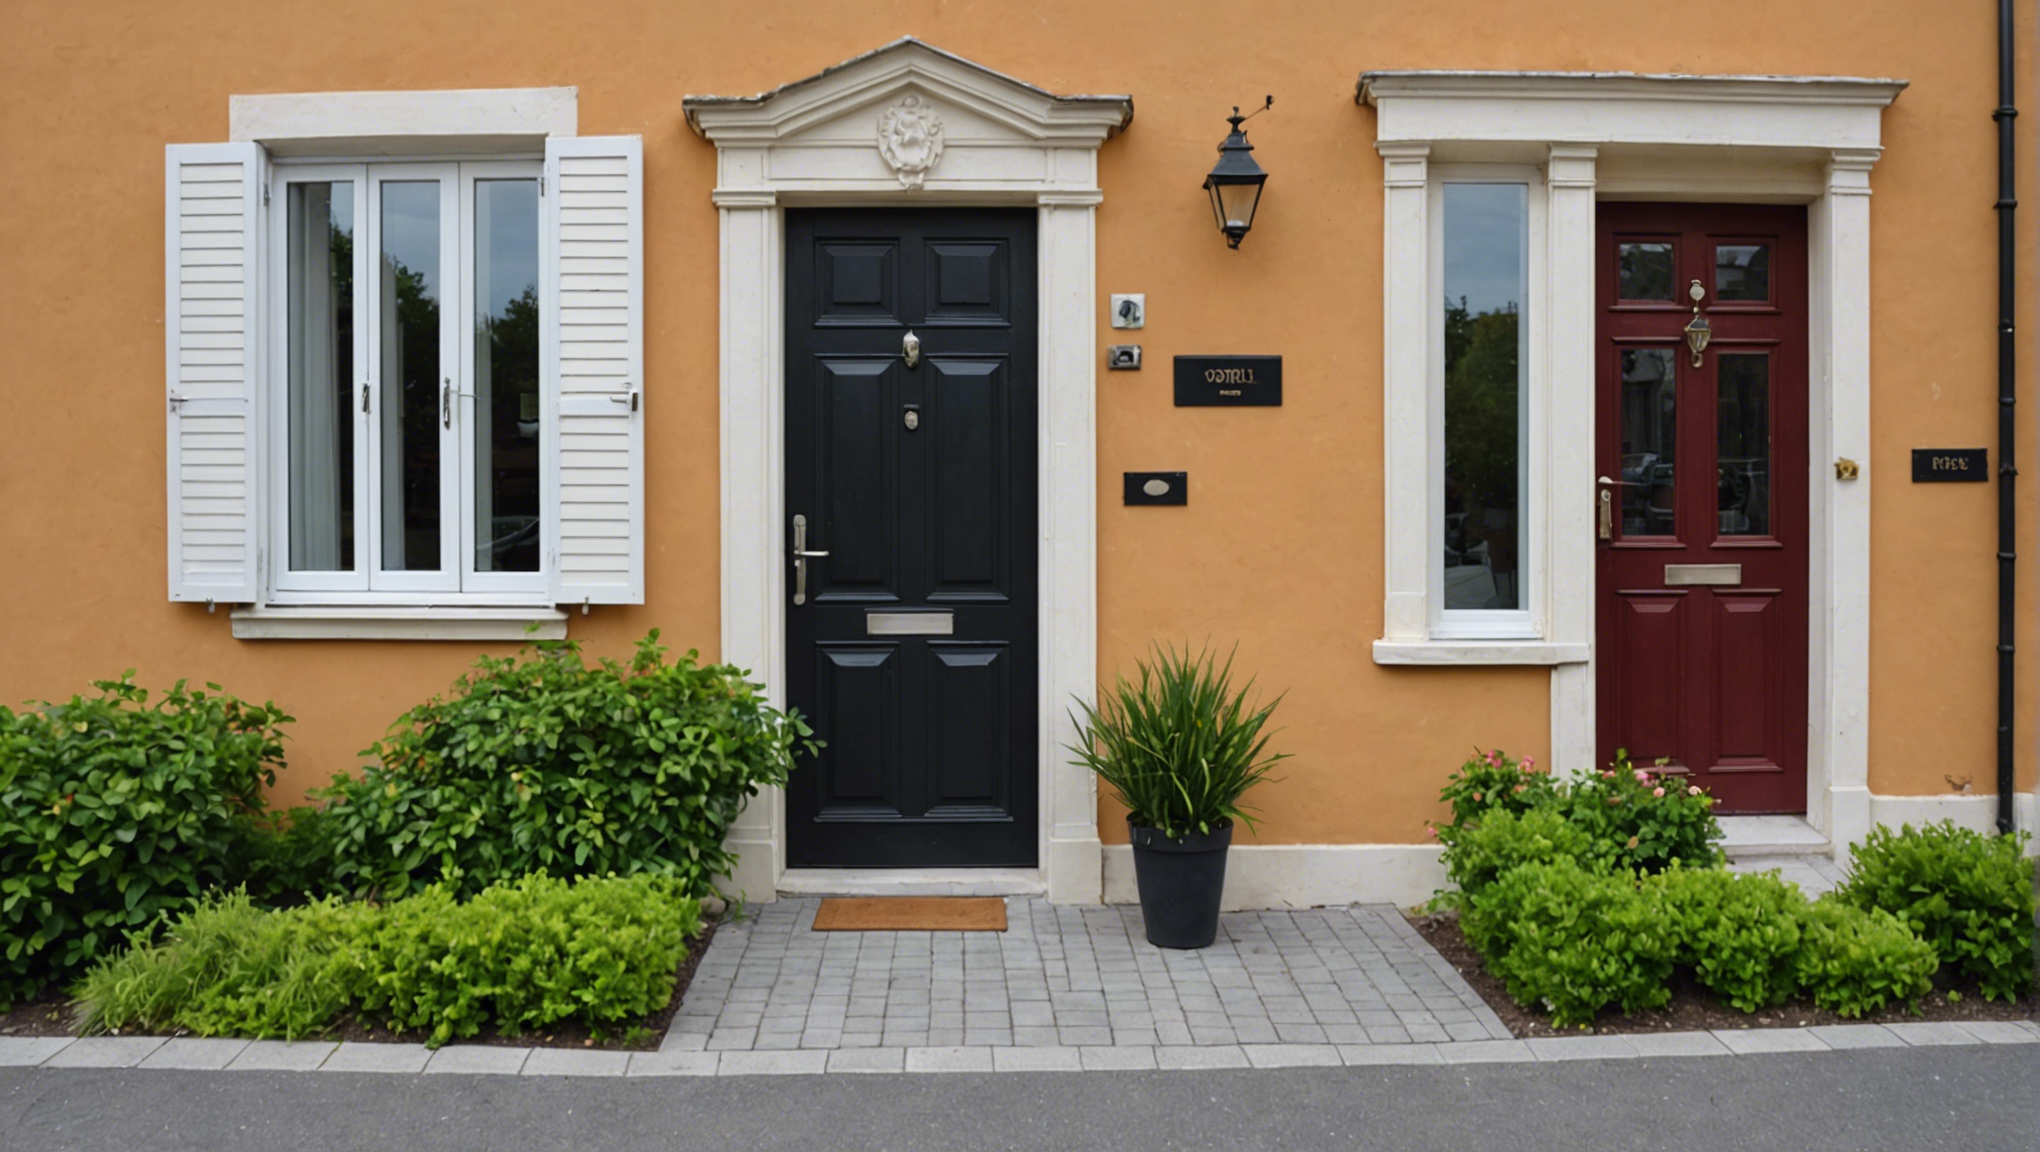 découvrez nos conseils pour choisir la parfaite entrée de portail pour votre maison et magnifier l'aspect extérieur de votre propriété.